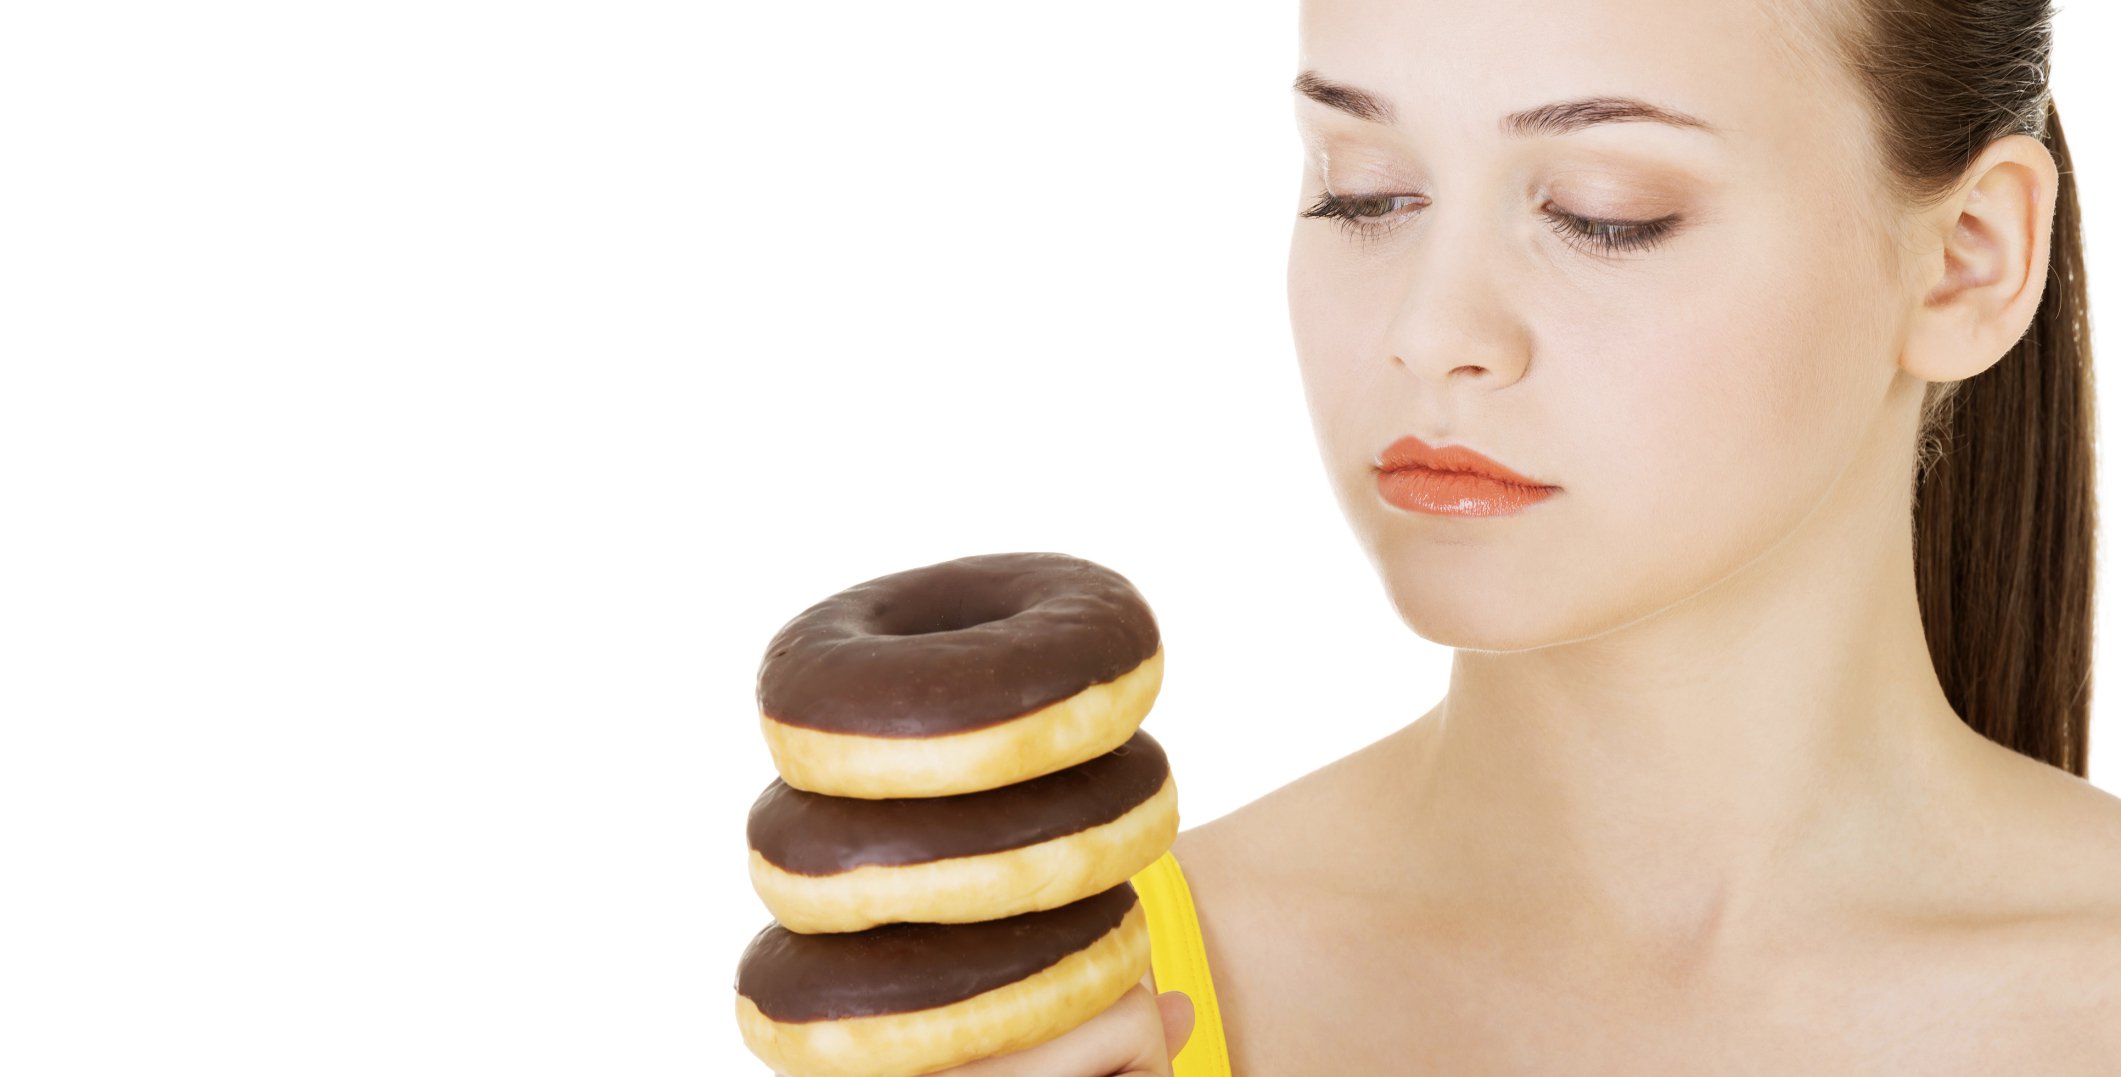 Woman_looking_at_donuts